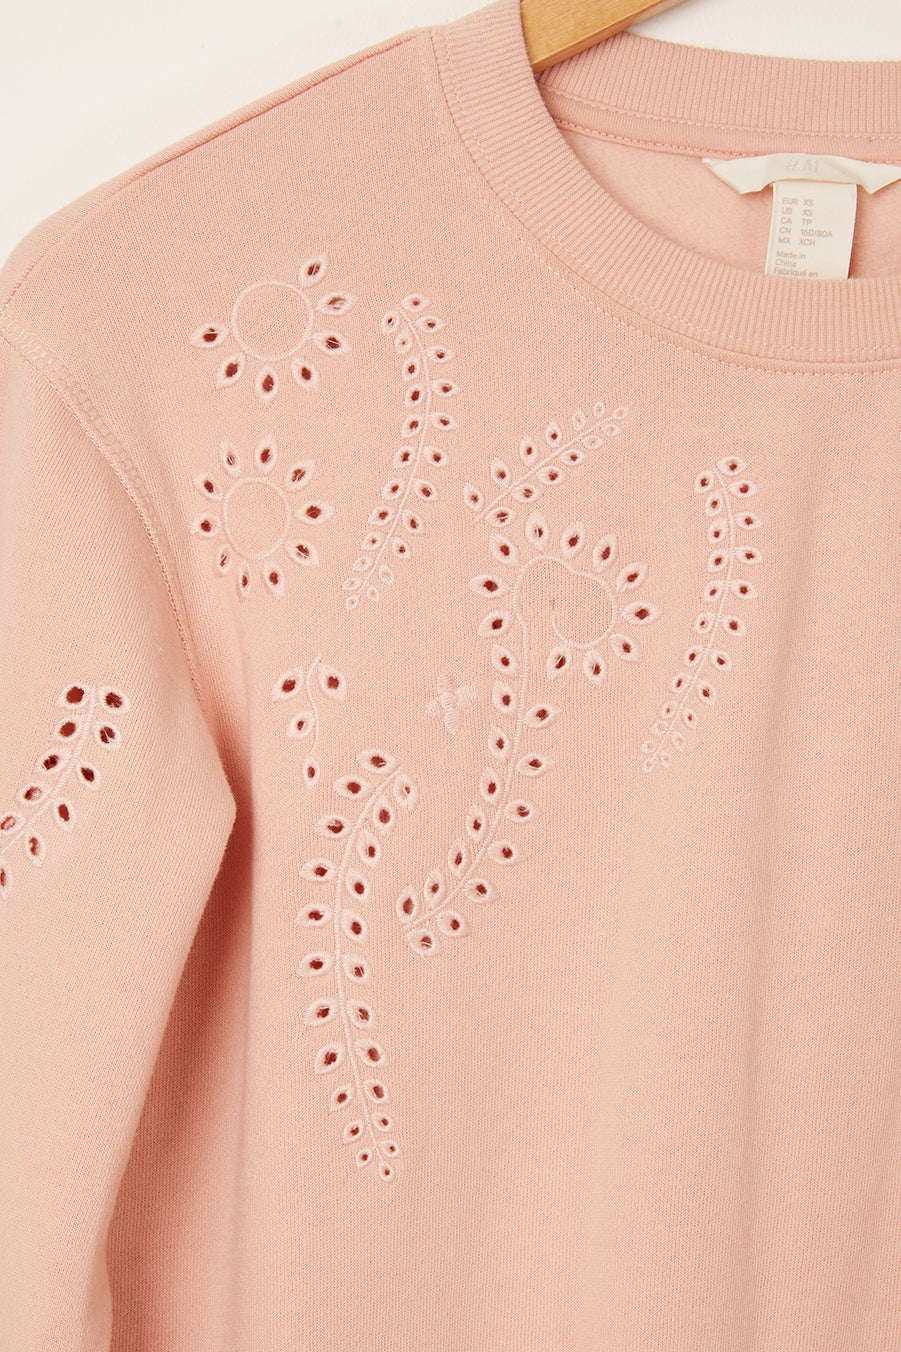 H&M <br> Paisley Pattern Cutout Sweatshirt <br> Size XS